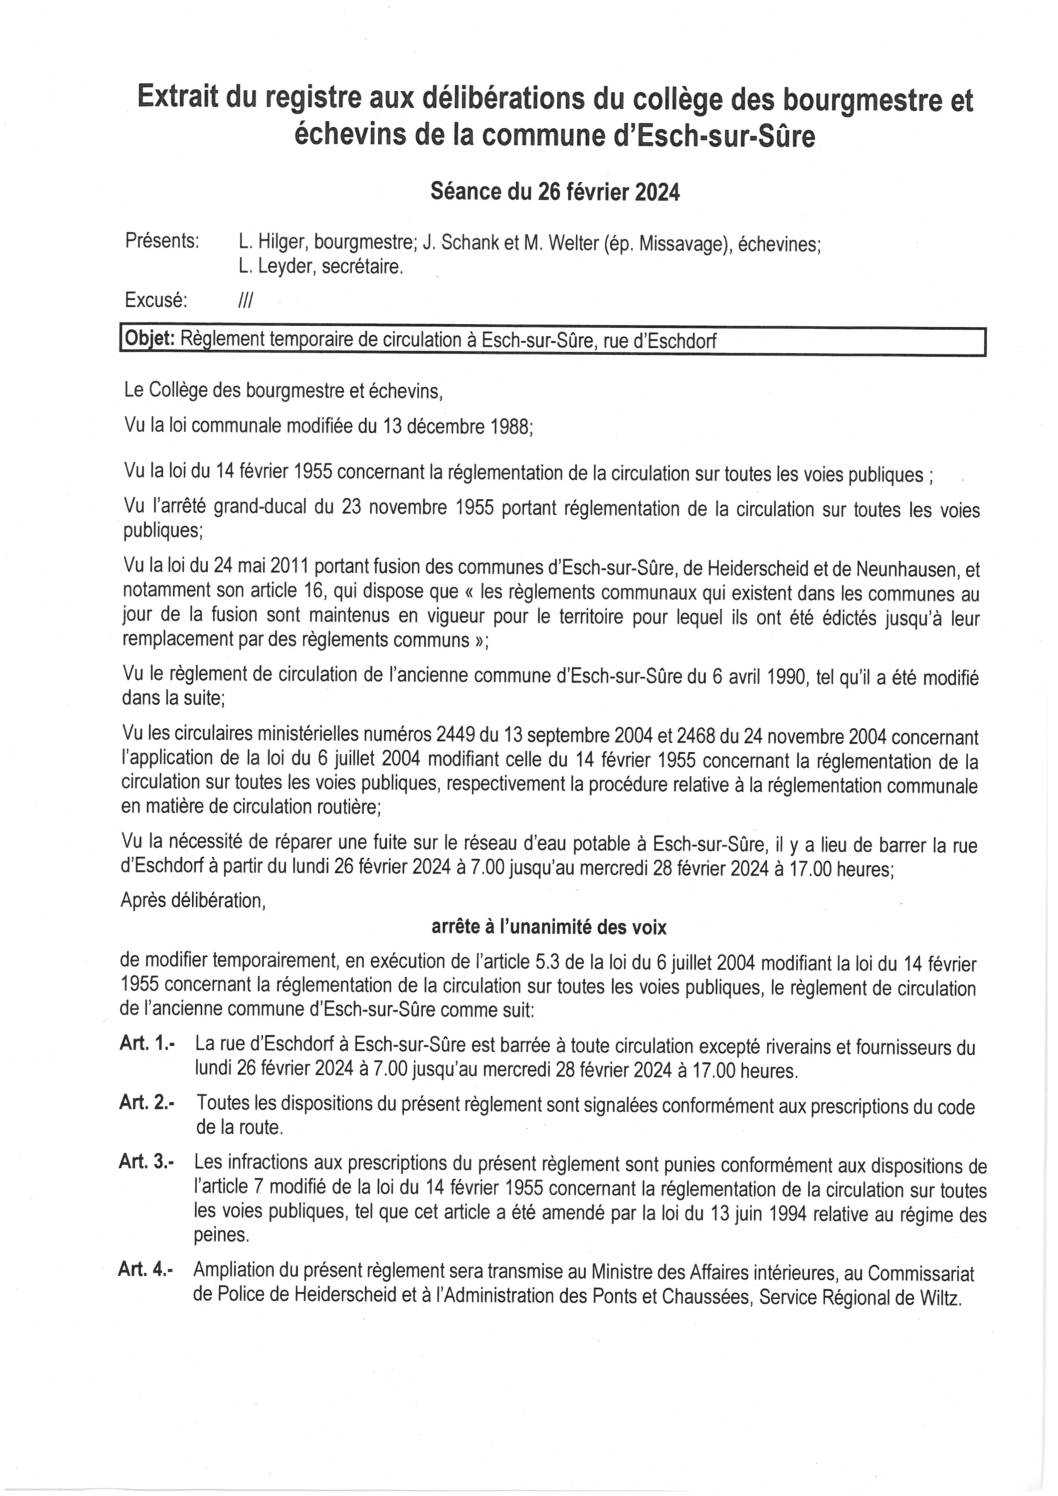 2024.02.26_Règlement temporaire de circulation à Esch-sur-Sûre (rue d'Eschdorf) du 26.02.2024 au 28.02.2024